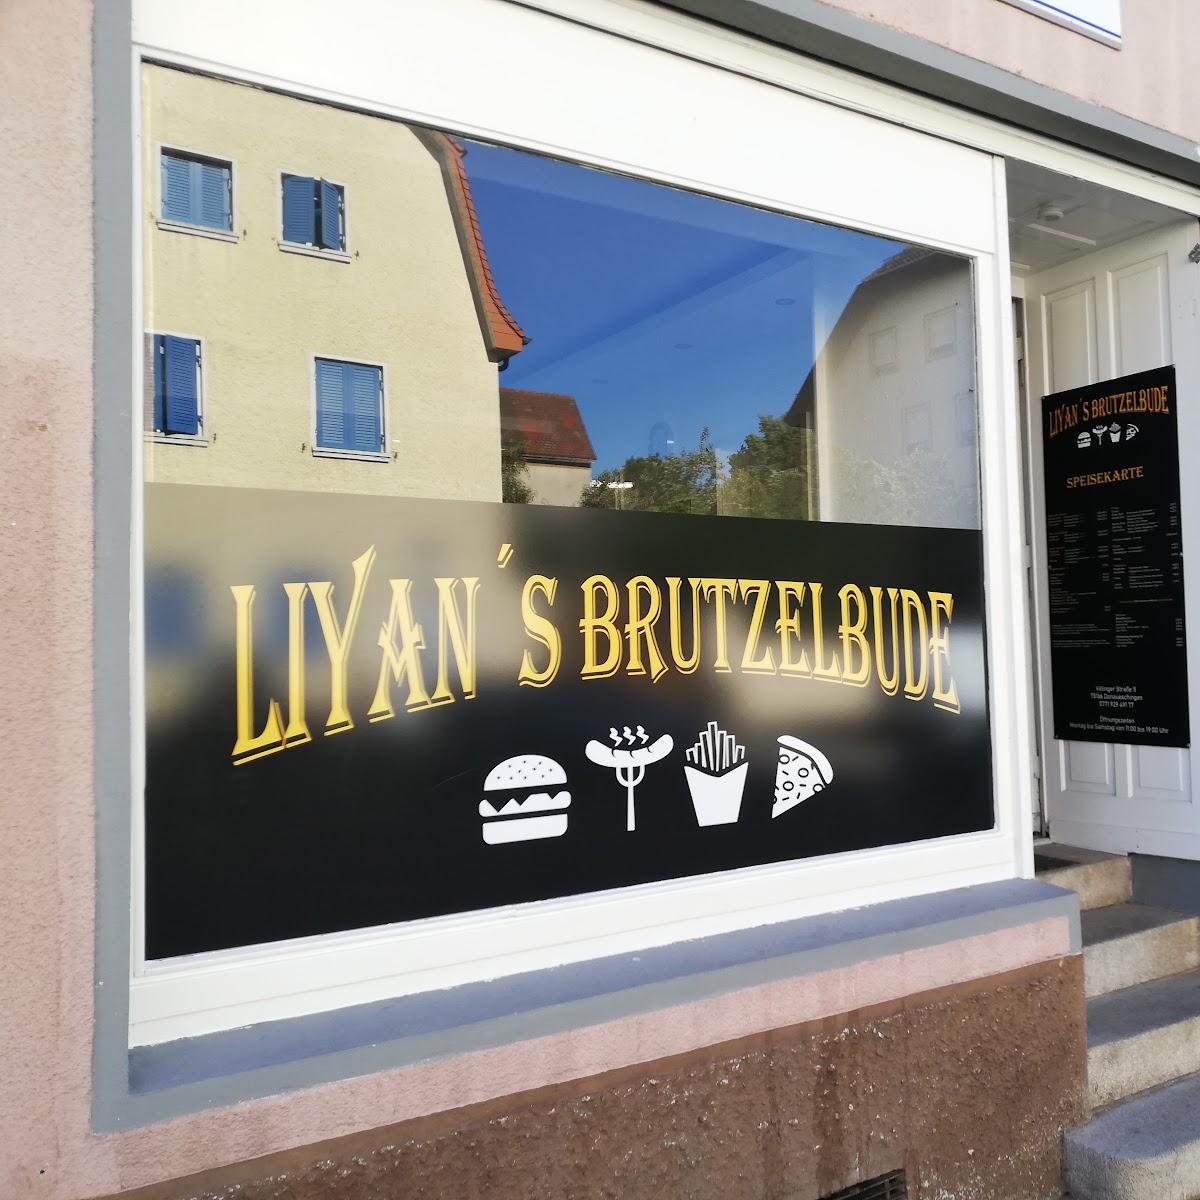 Restaurant "Liyans´s Brutzelbude" in Donaueschingen